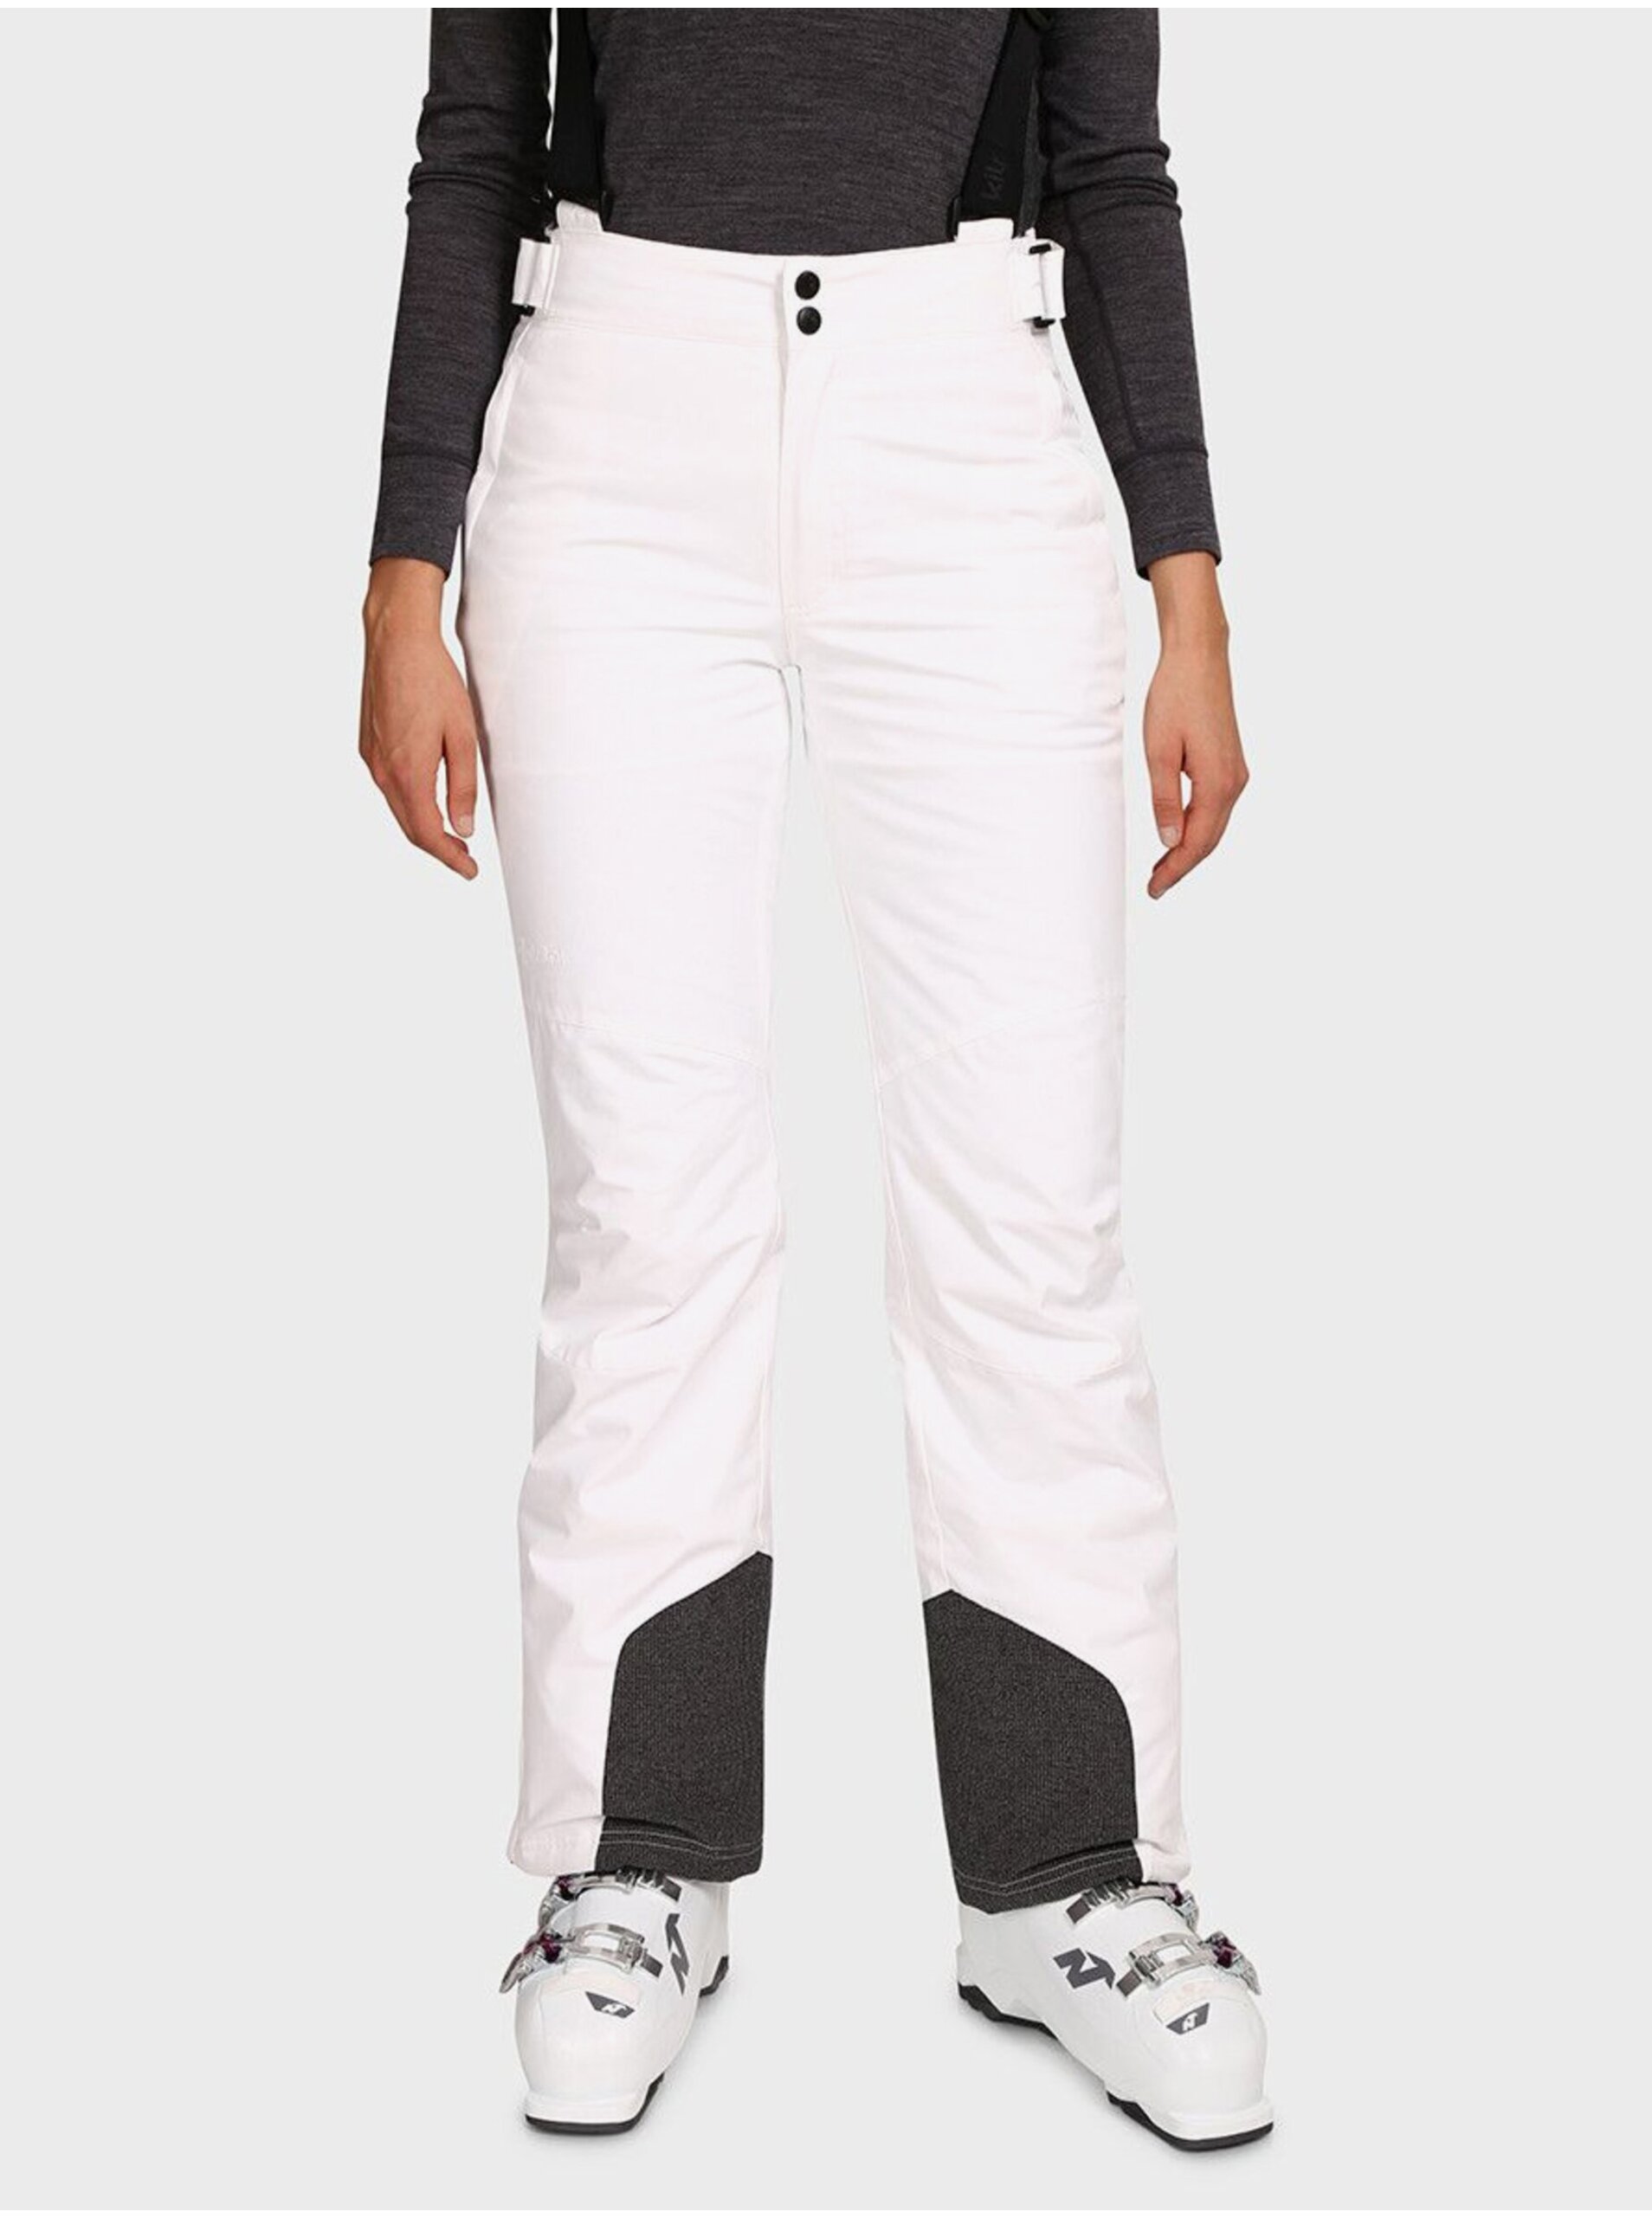 E-shop Bílé dámské lyžařské kalhoty KILPI ELARE